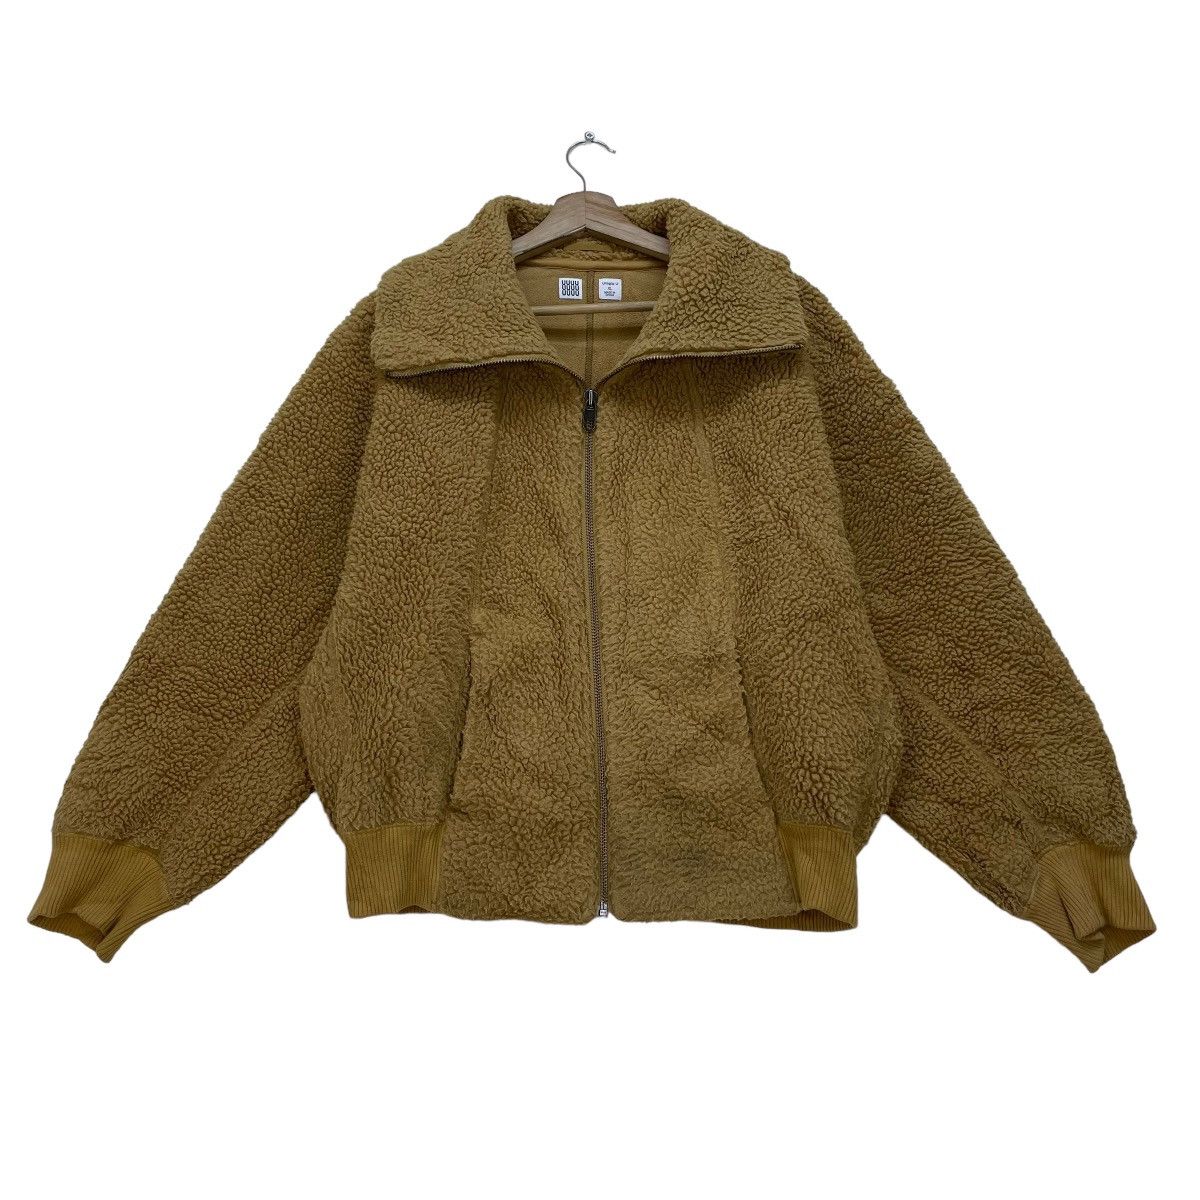 Japanese Brand Uniqlo X Lemaire Sherpa Jacket - 1